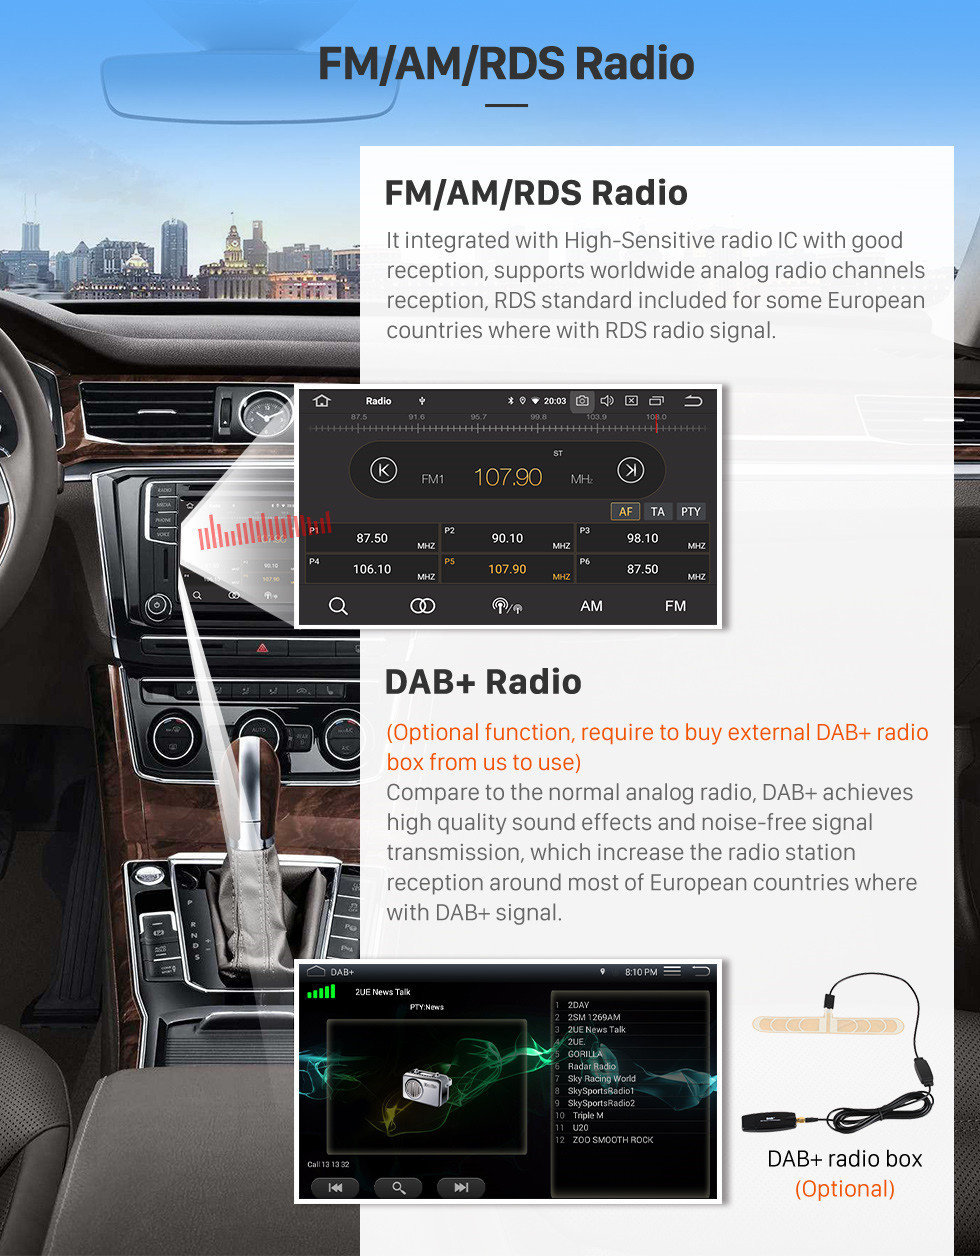 Seicane Tela sensível ao toque HD 2010-2019 Kia Carnival Android 12.0 9 polegadas GPS Navigation Radio Bluetooth AUX Carplay support DAB + OBD2 Câmera traseira